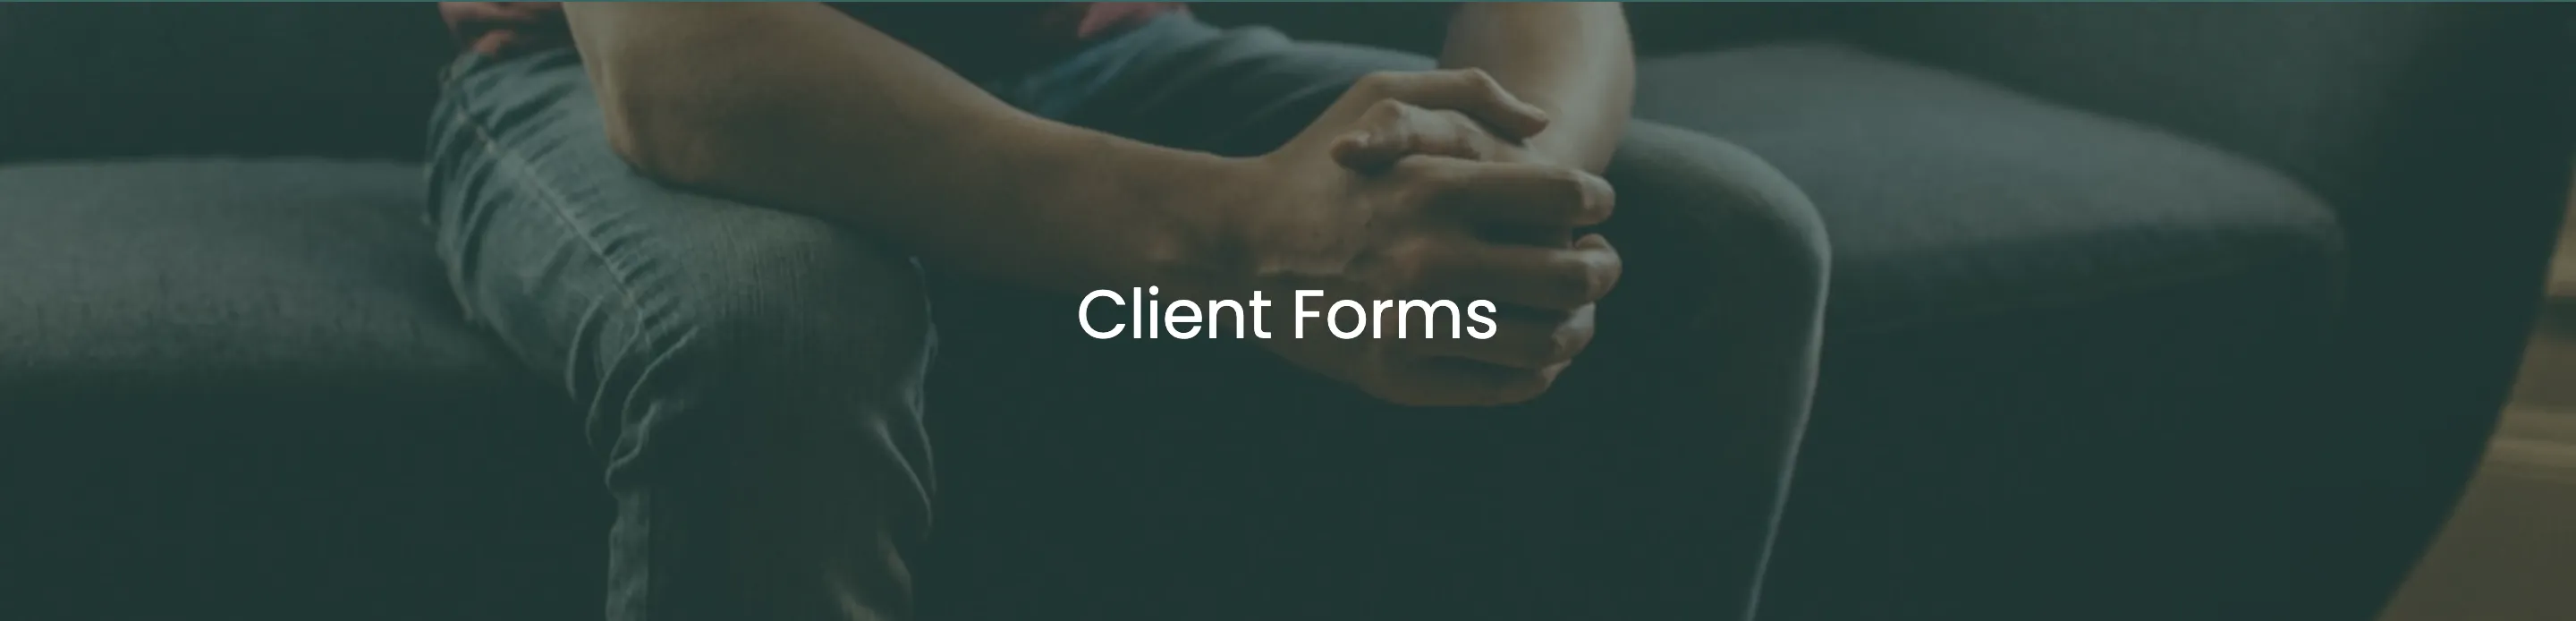 client forms 